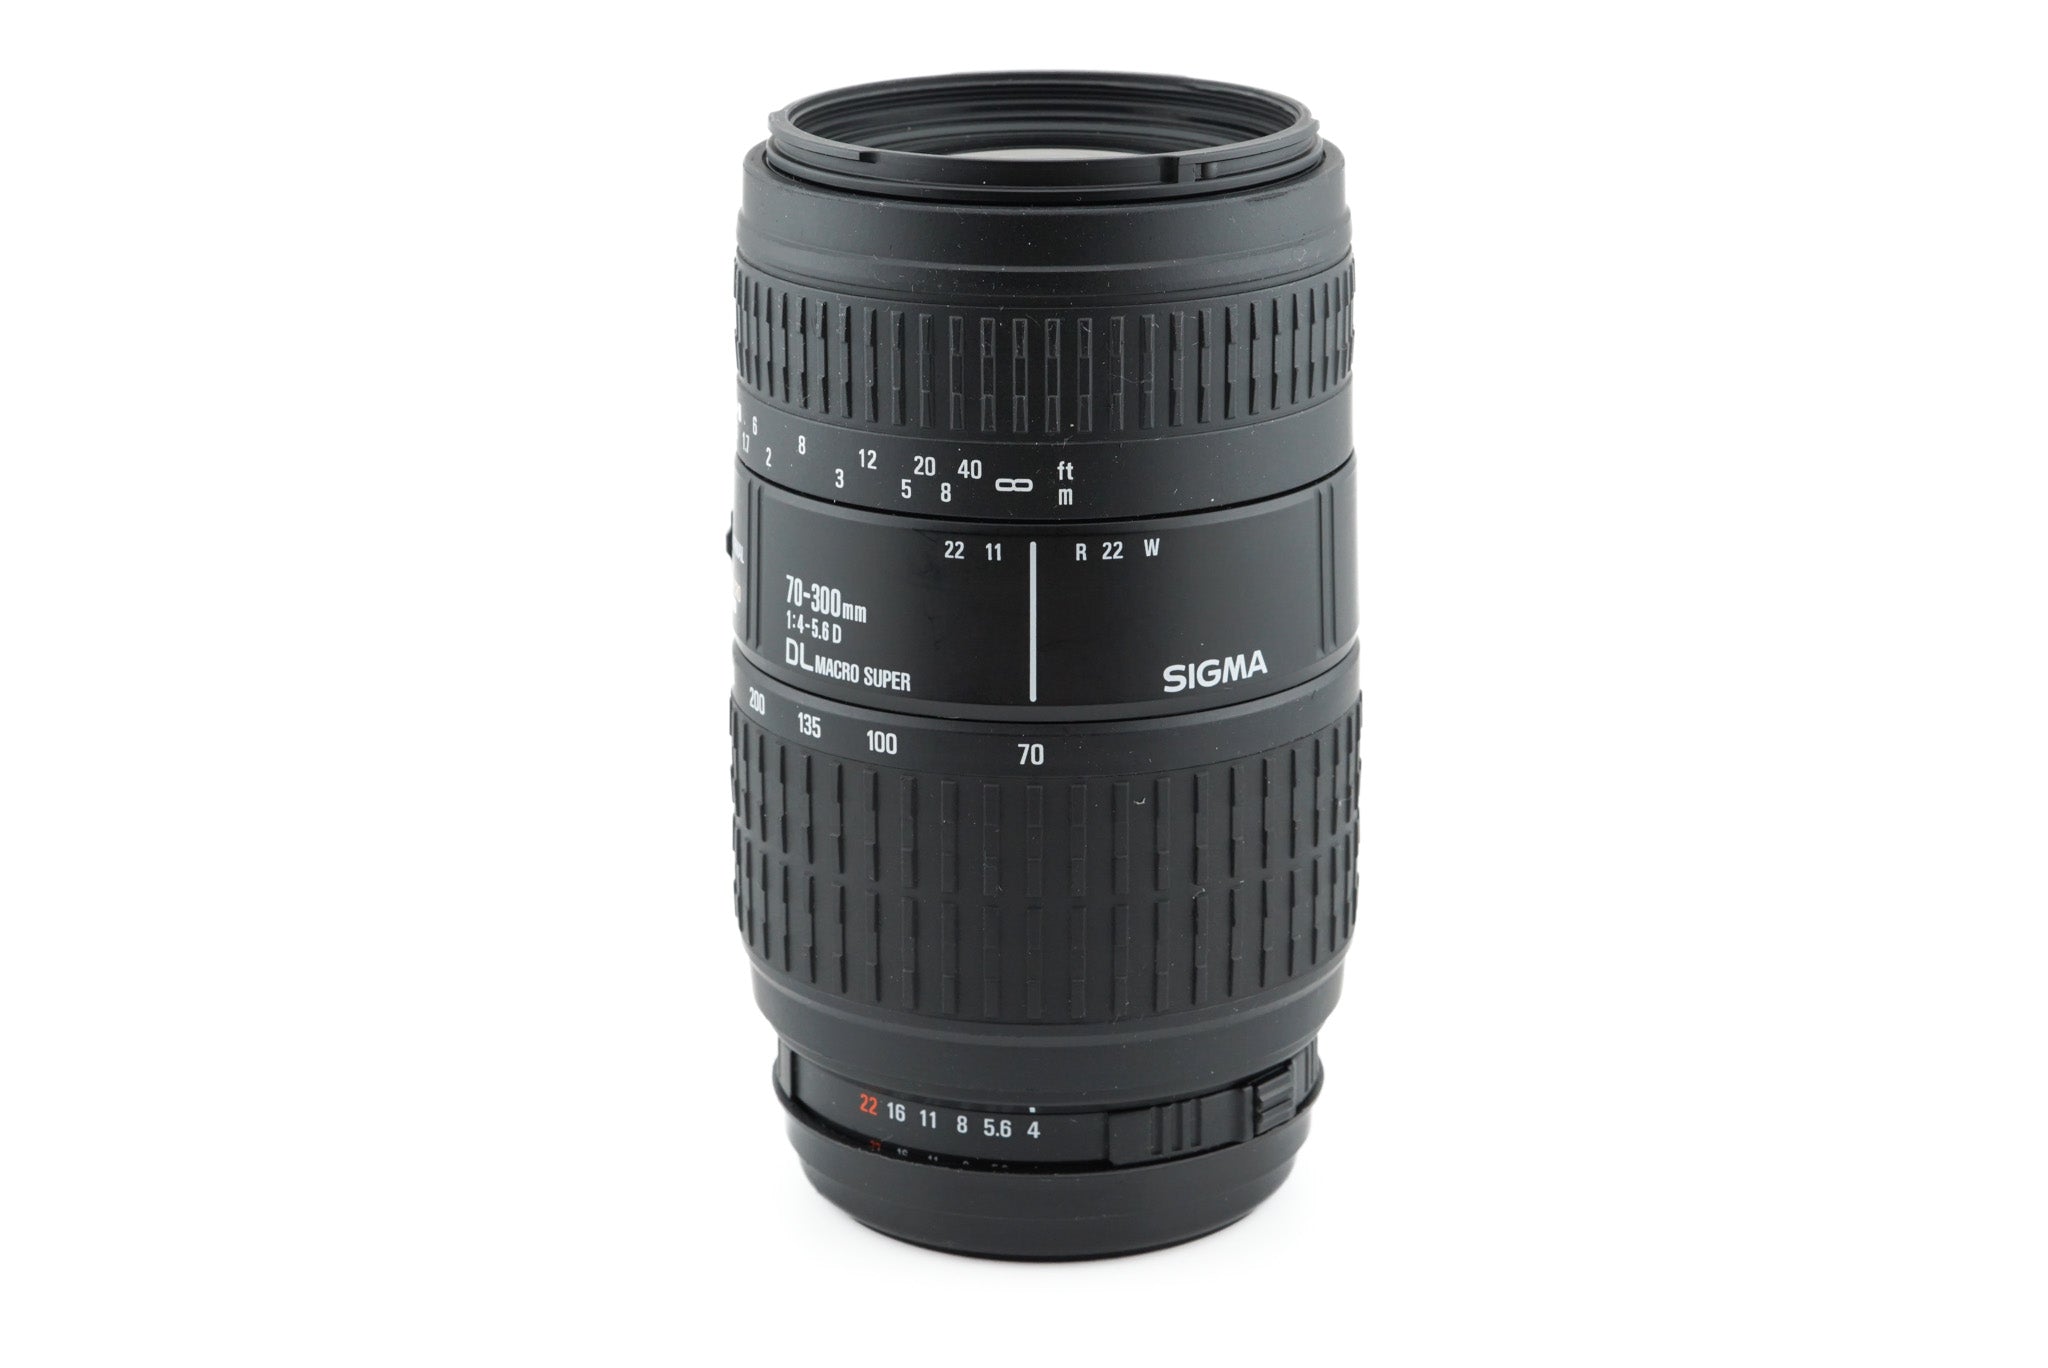 正規品 極美品 SIGMA Sigma 70-300mm DL MACRO SUPER f4-5.6 カメラ